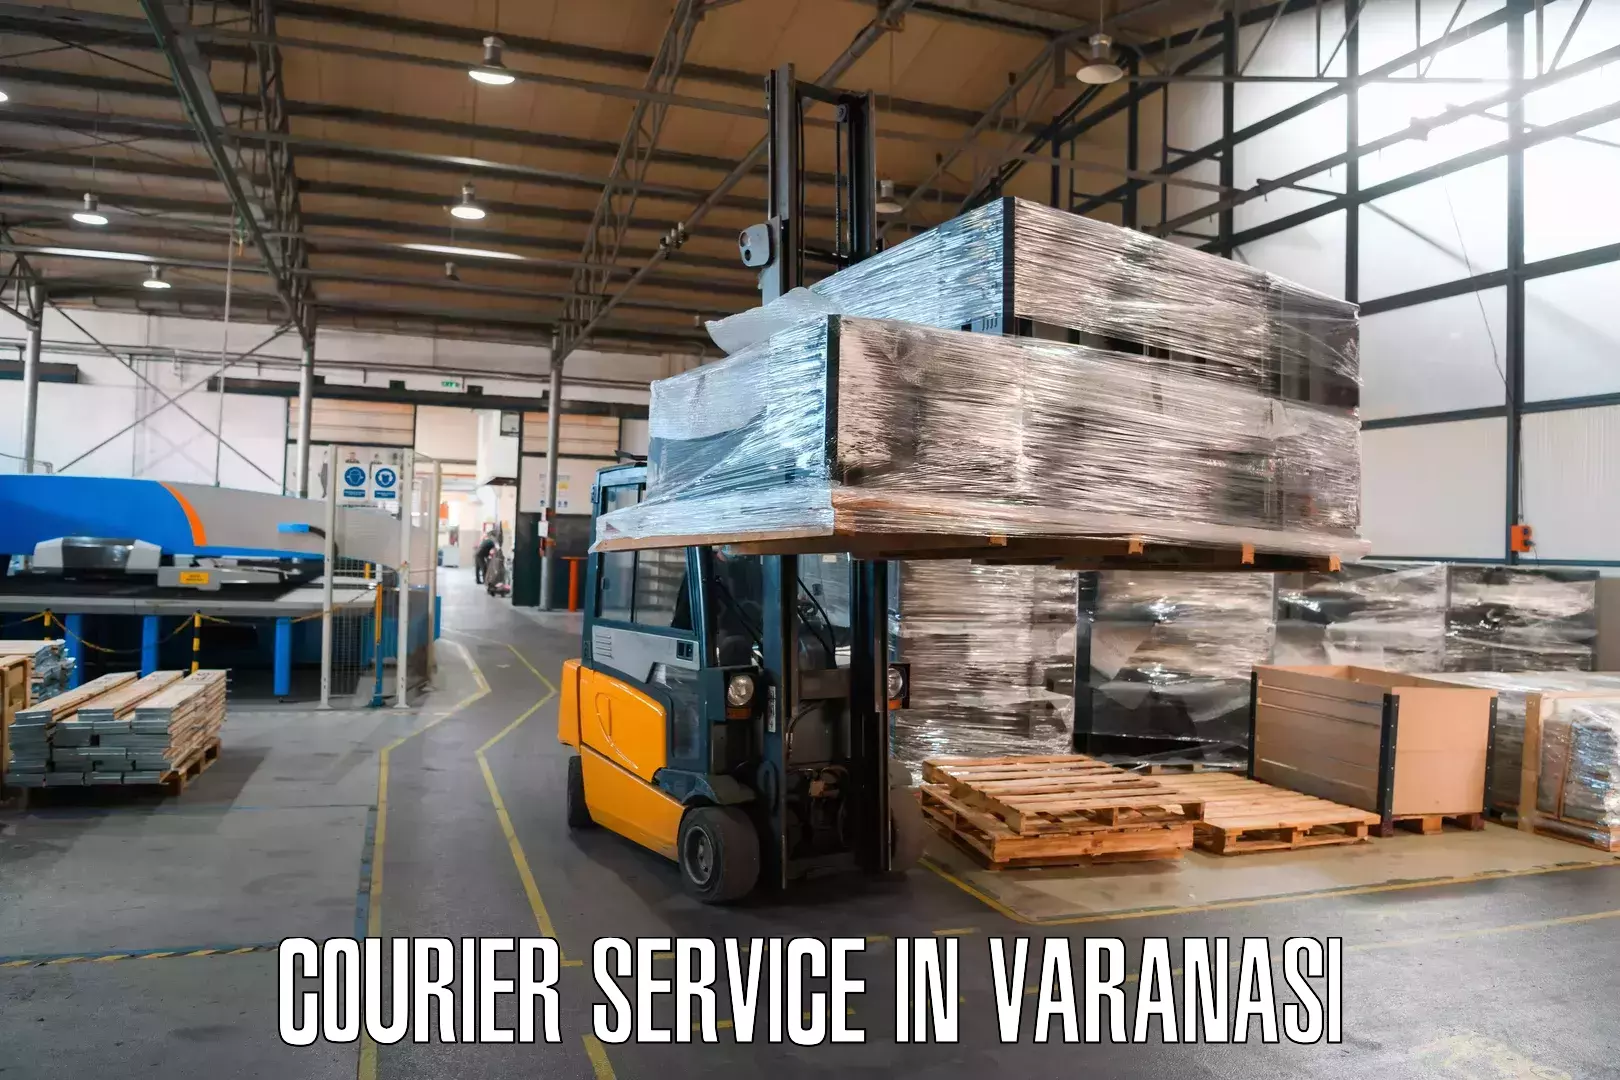 Courier service innovation in Varanasi